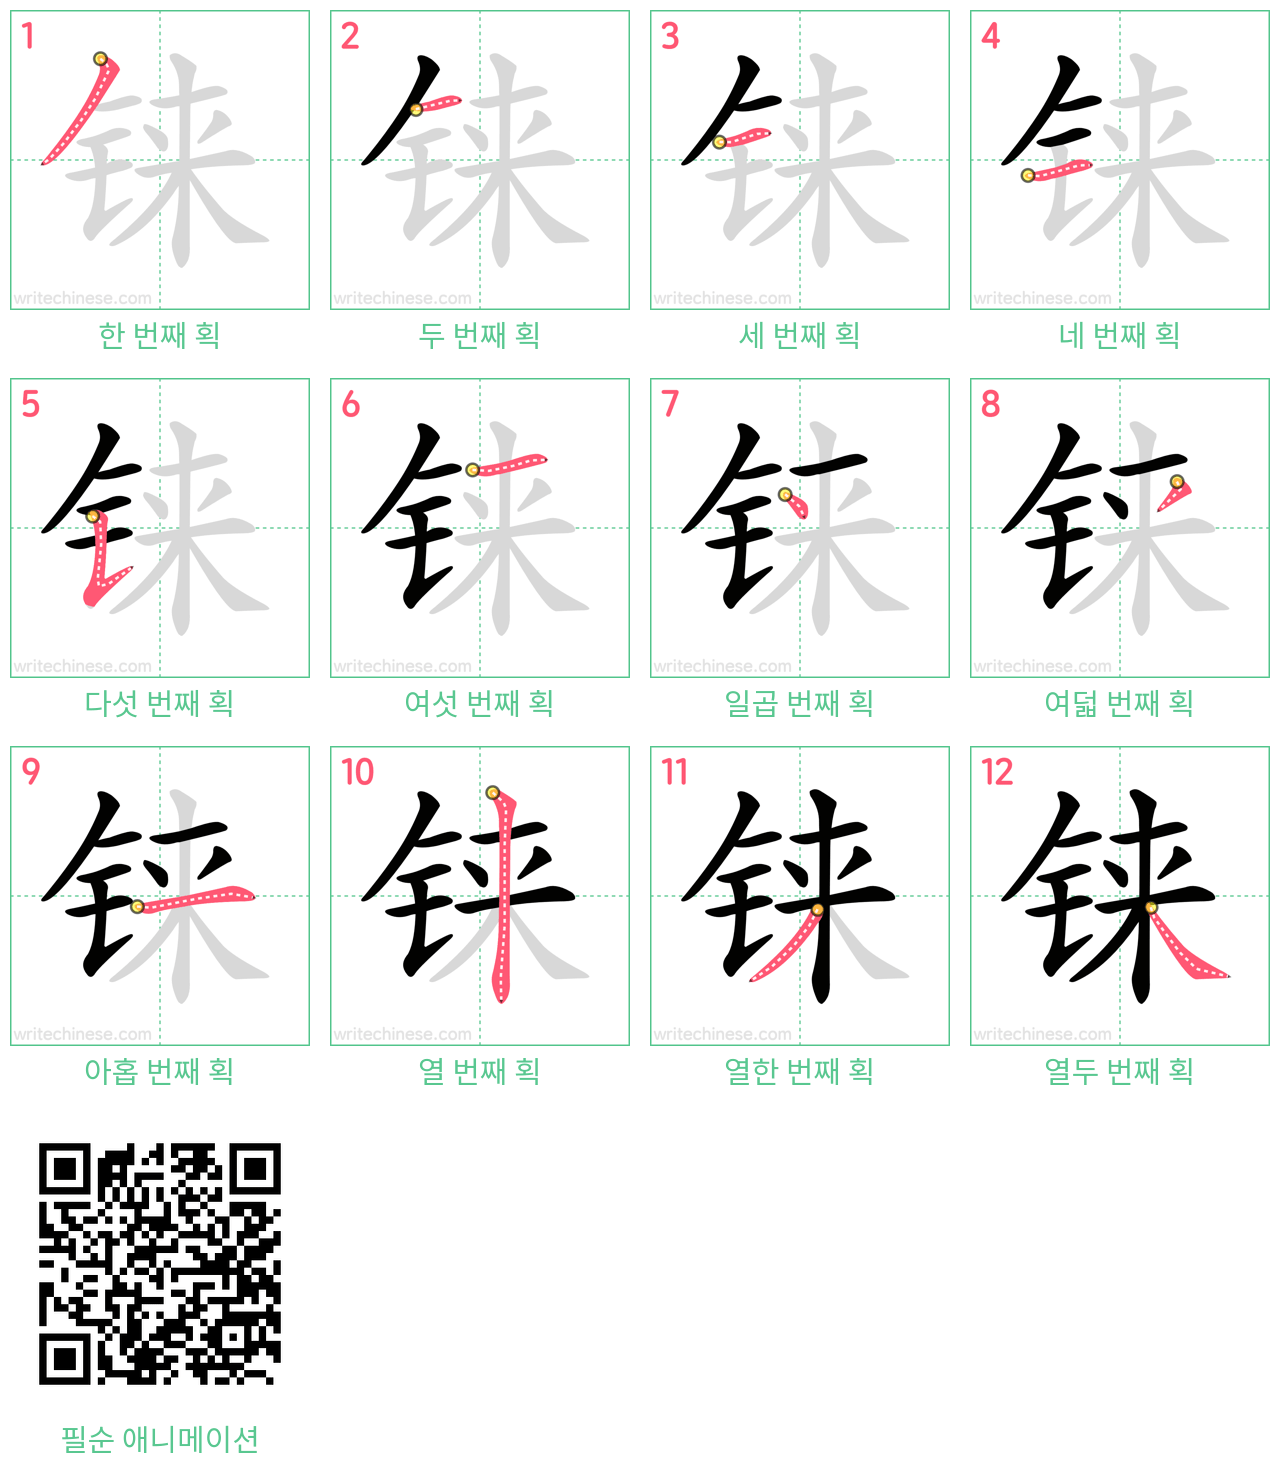 铼 step-by-step stroke order diagrams